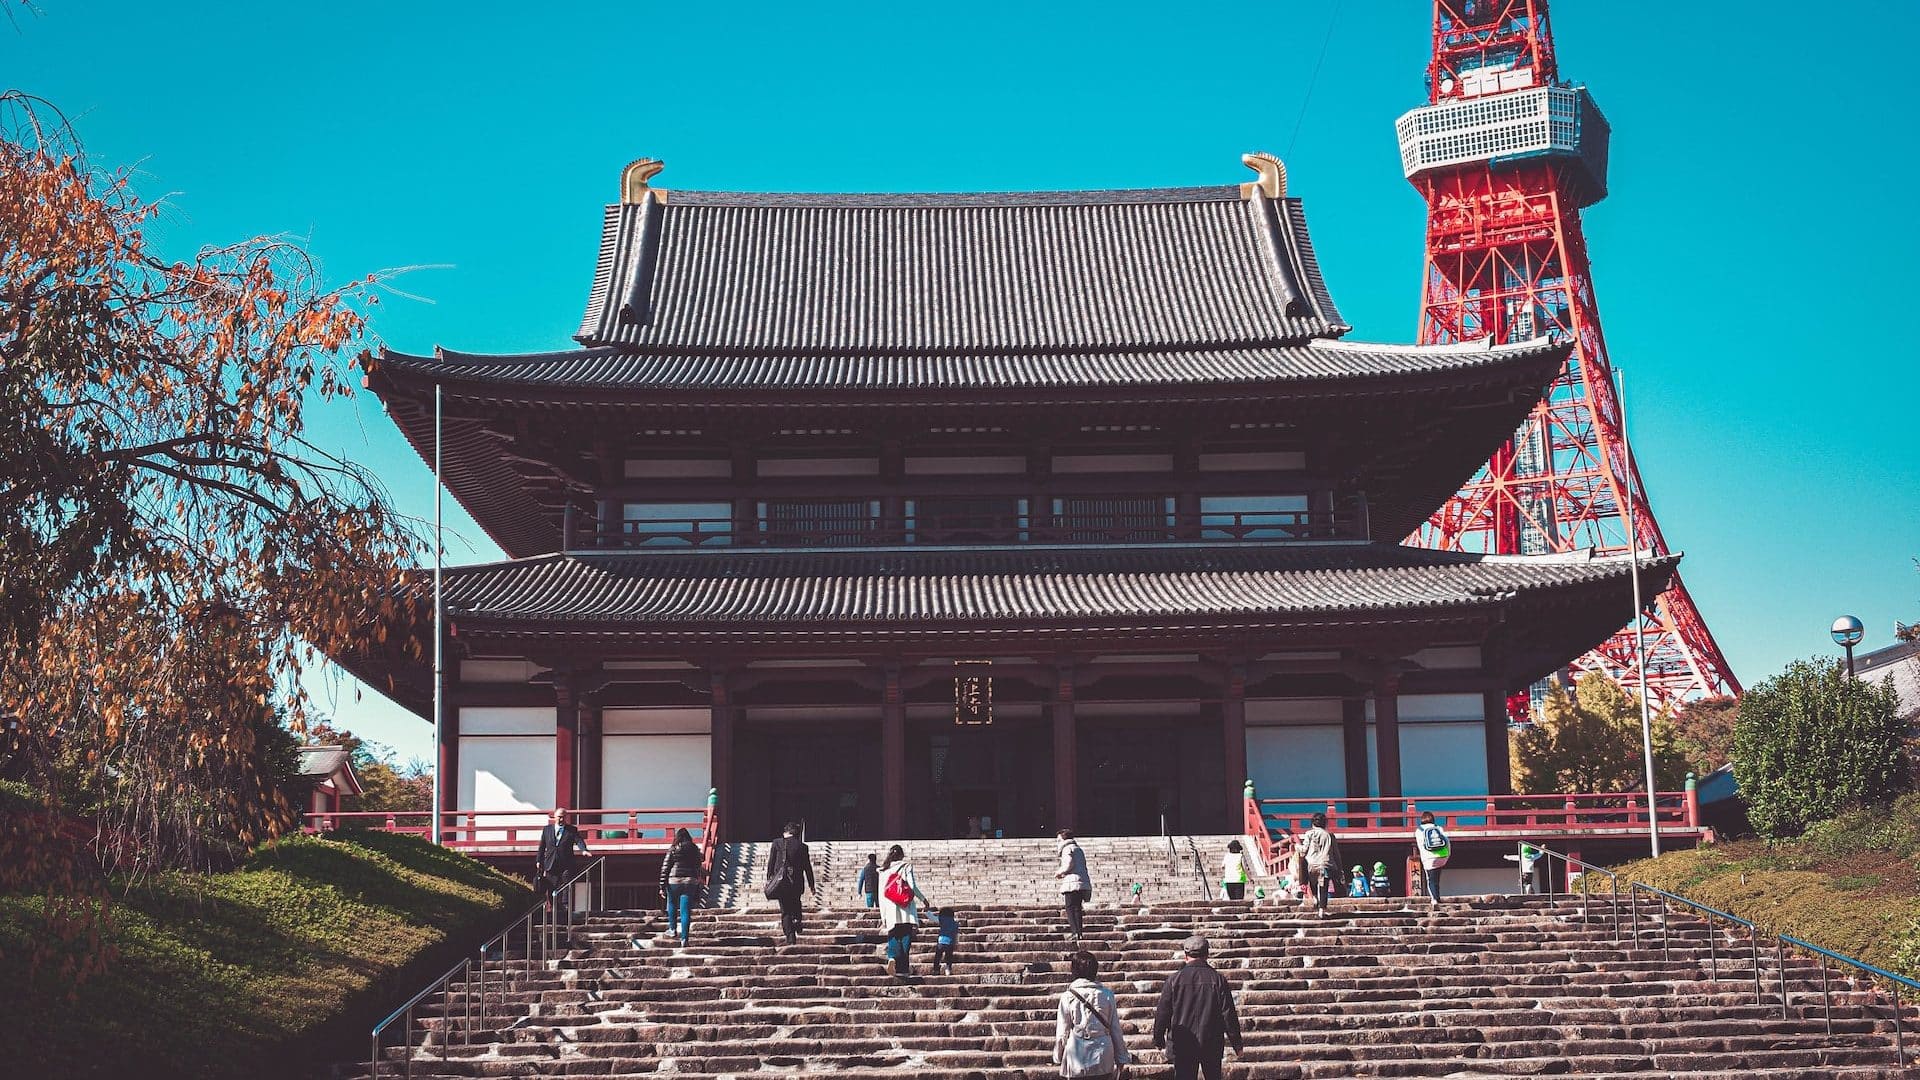 El templo Sengakuji y el templo Zojoji se encuentran en esta zona.